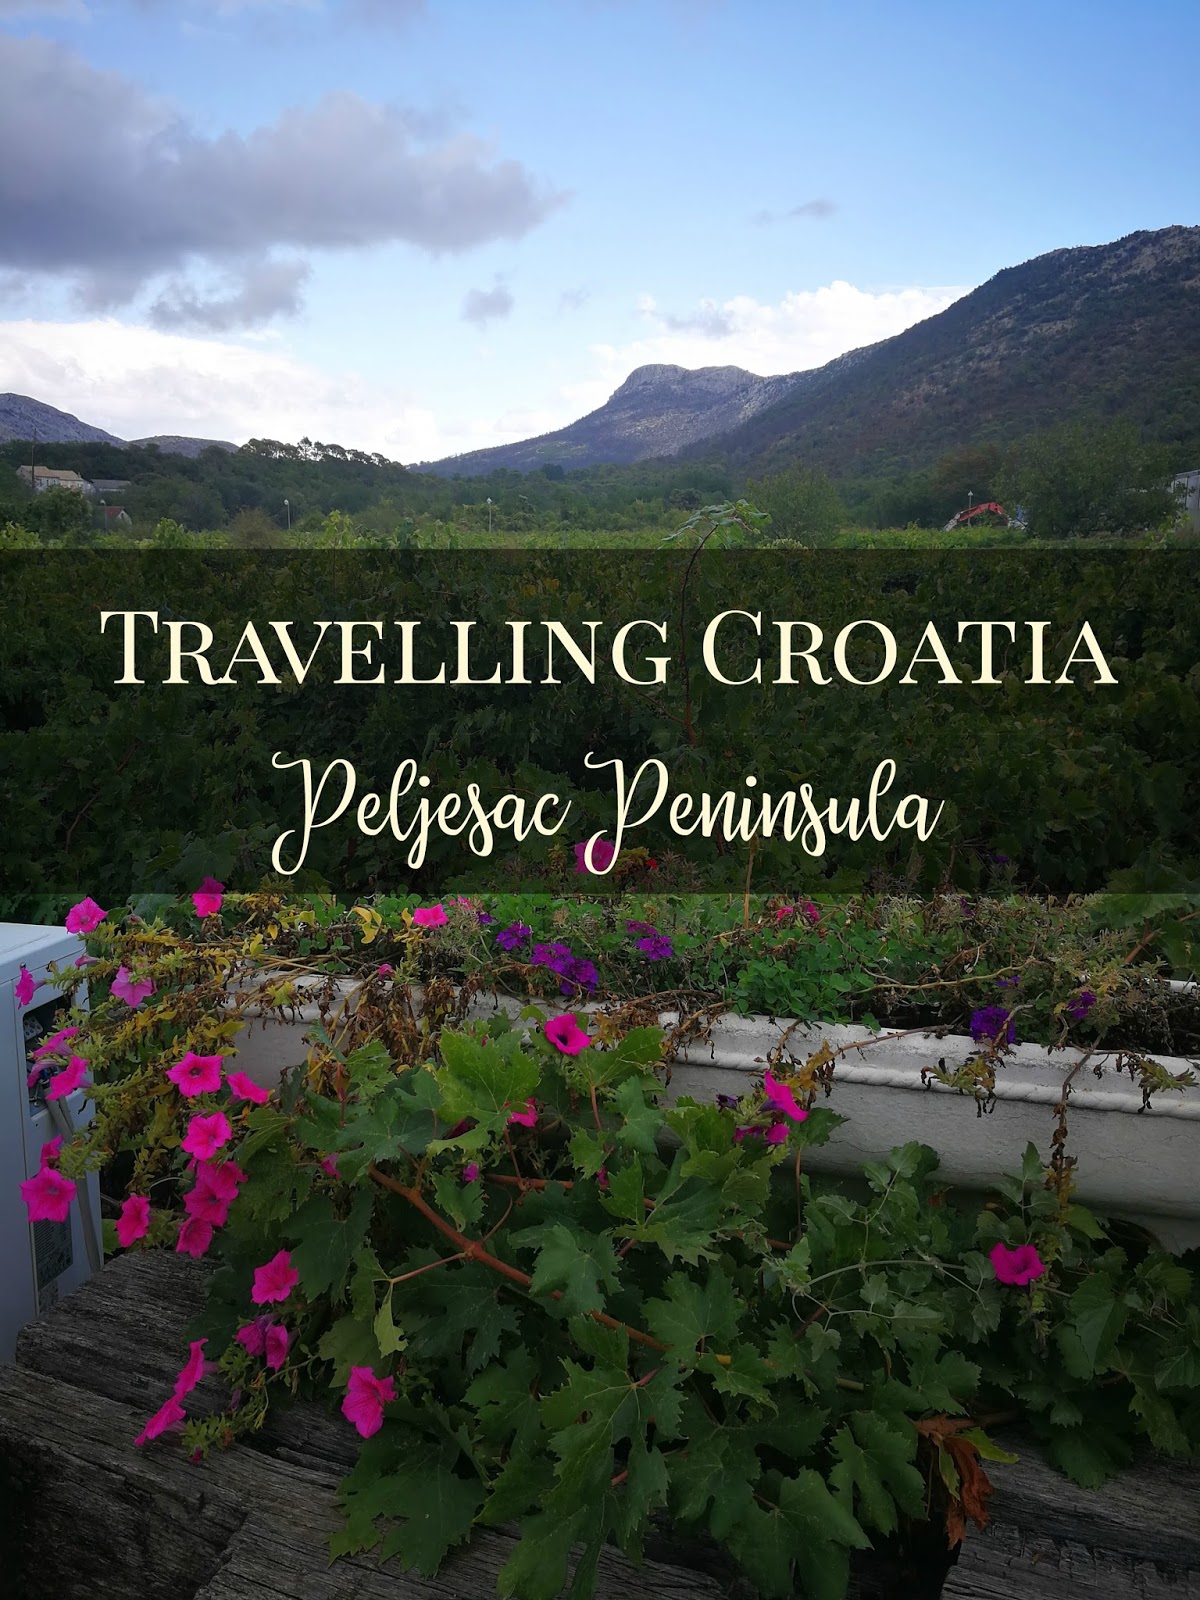 Travelling Croatia - Wine Tasting on the Peljesac Peninsula